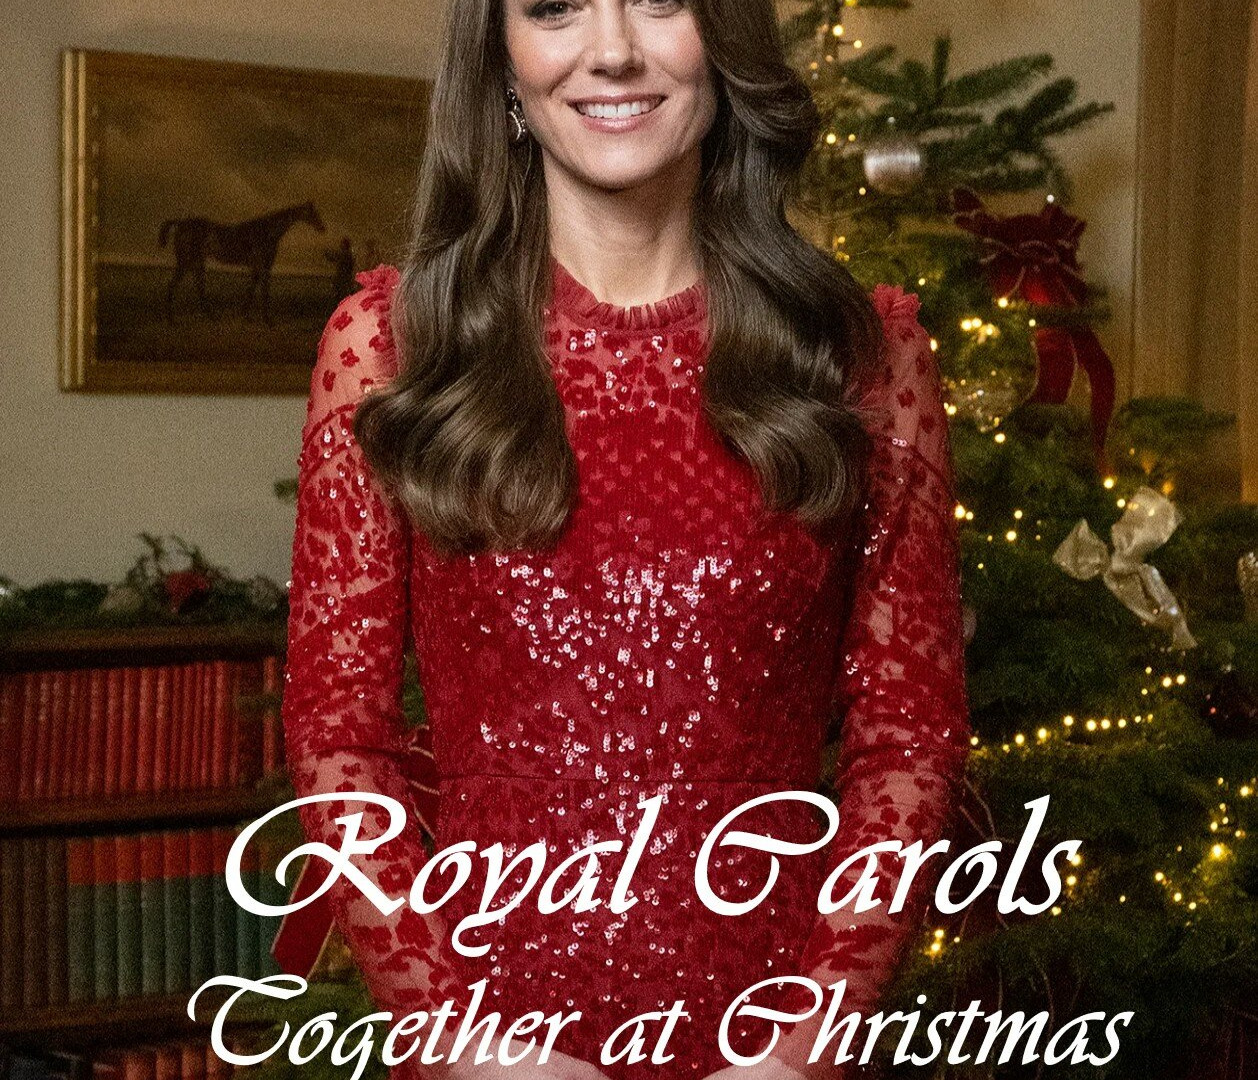 Show Royal Carols: Together at Christmas